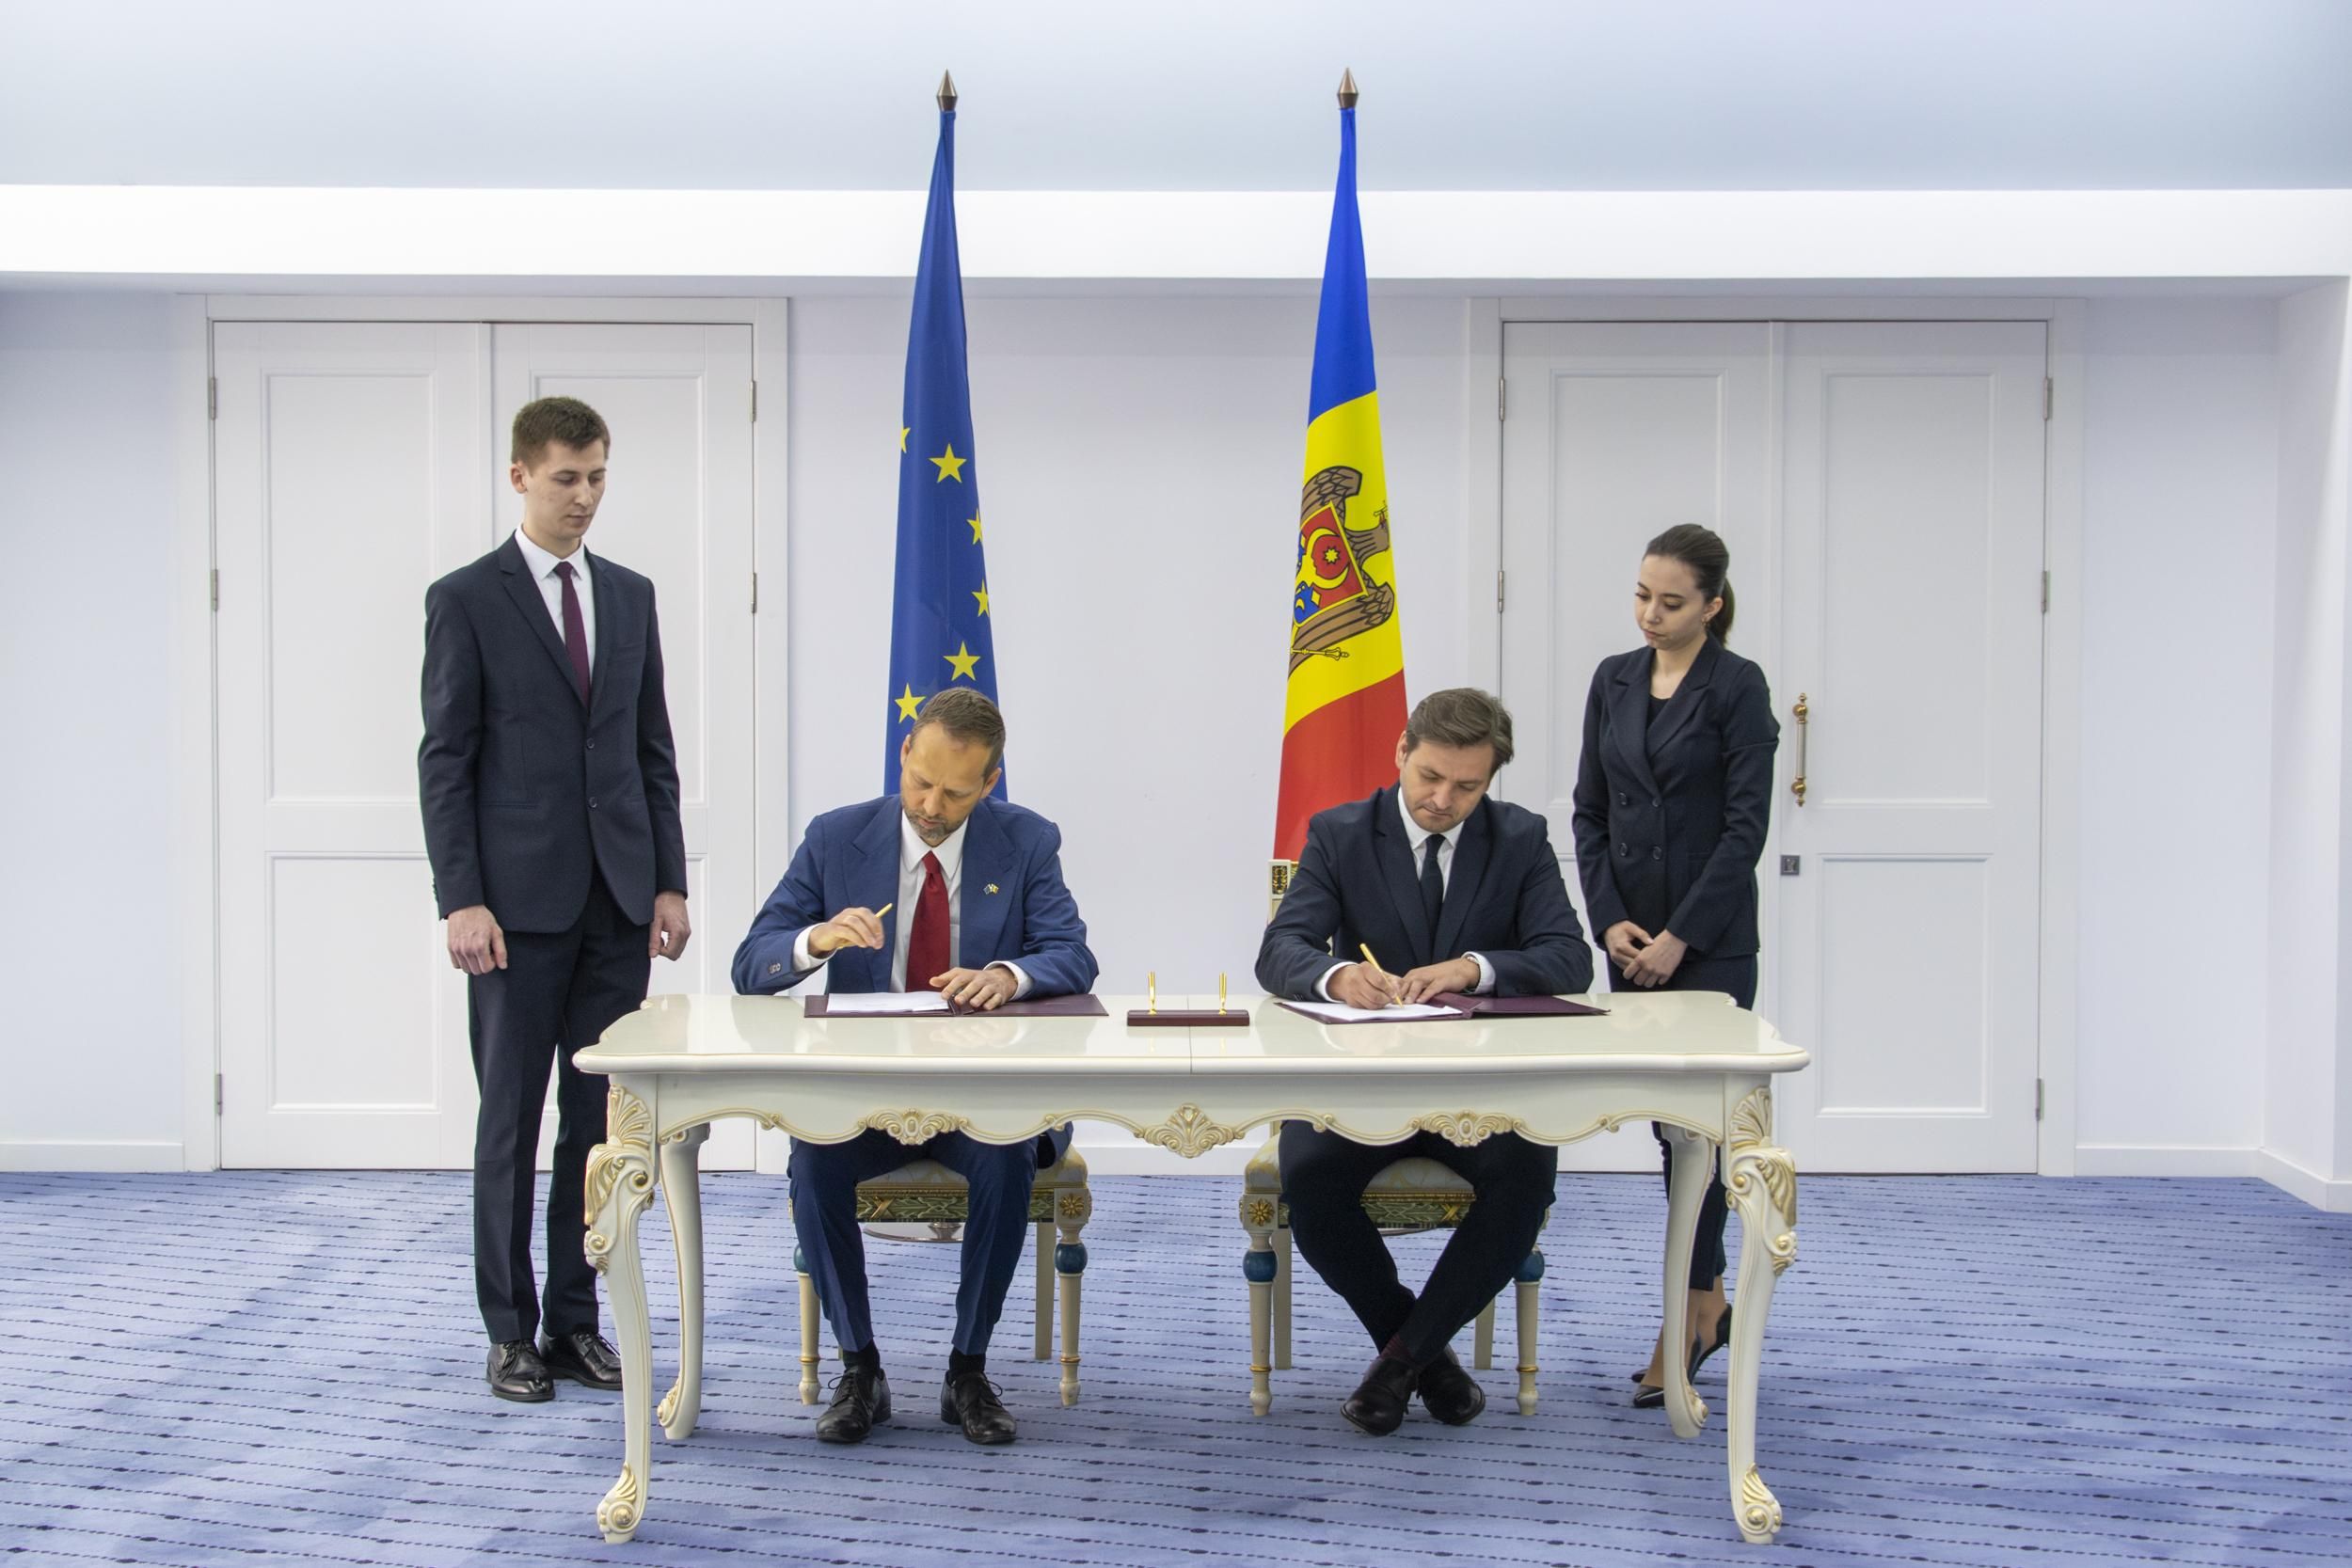 Евросоюз предоставляет новый грант в размере 8 млн евро на поддержку предпринимательства в Республике Молдова